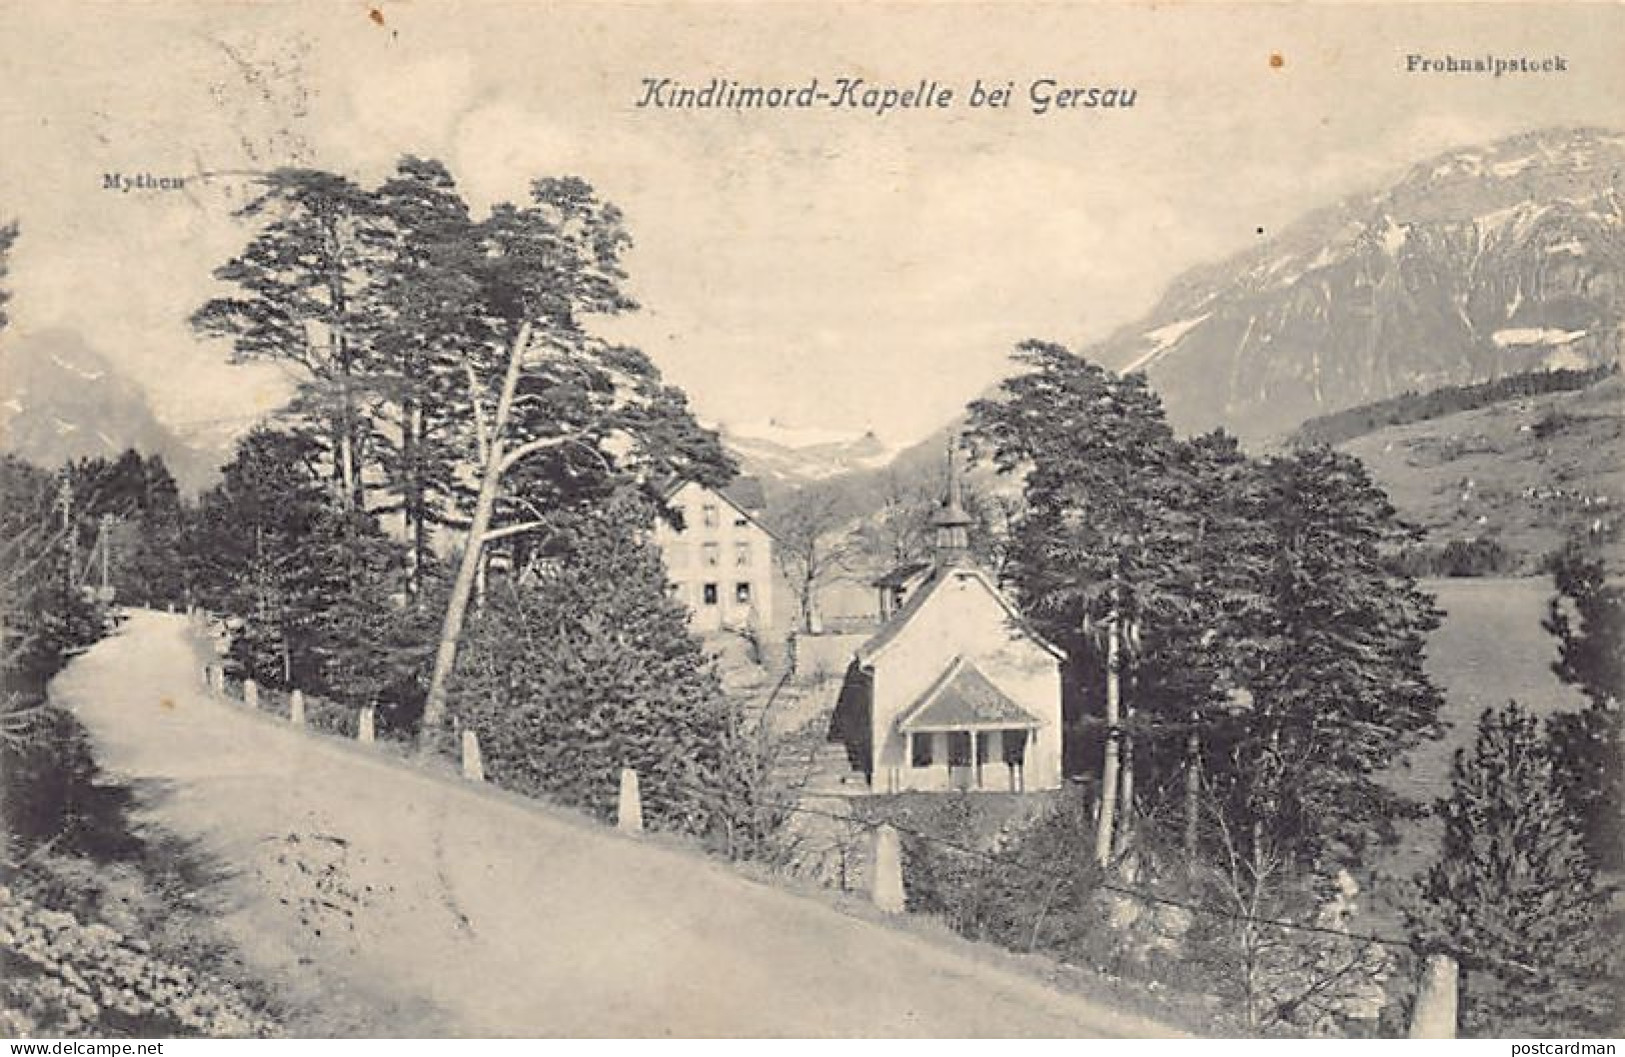 GERSAU (SZ) Kindlimord-Kapelle - Verlag F. Beeler 1243 - Gersau